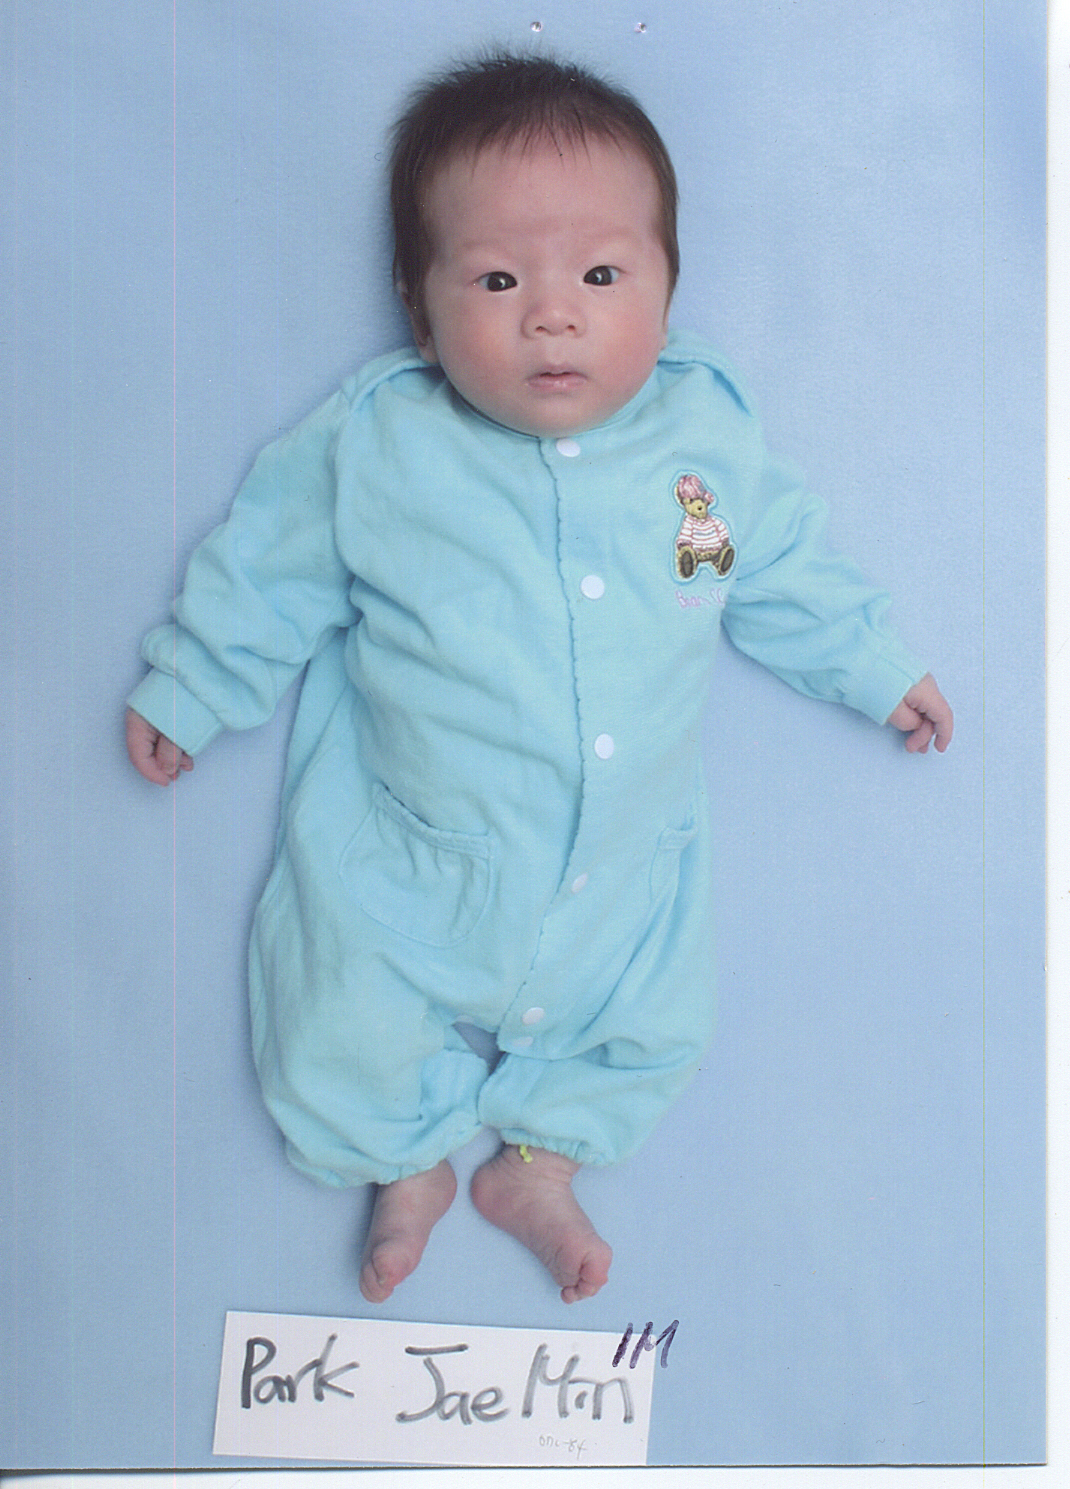 Adam Jae Min,1 month old